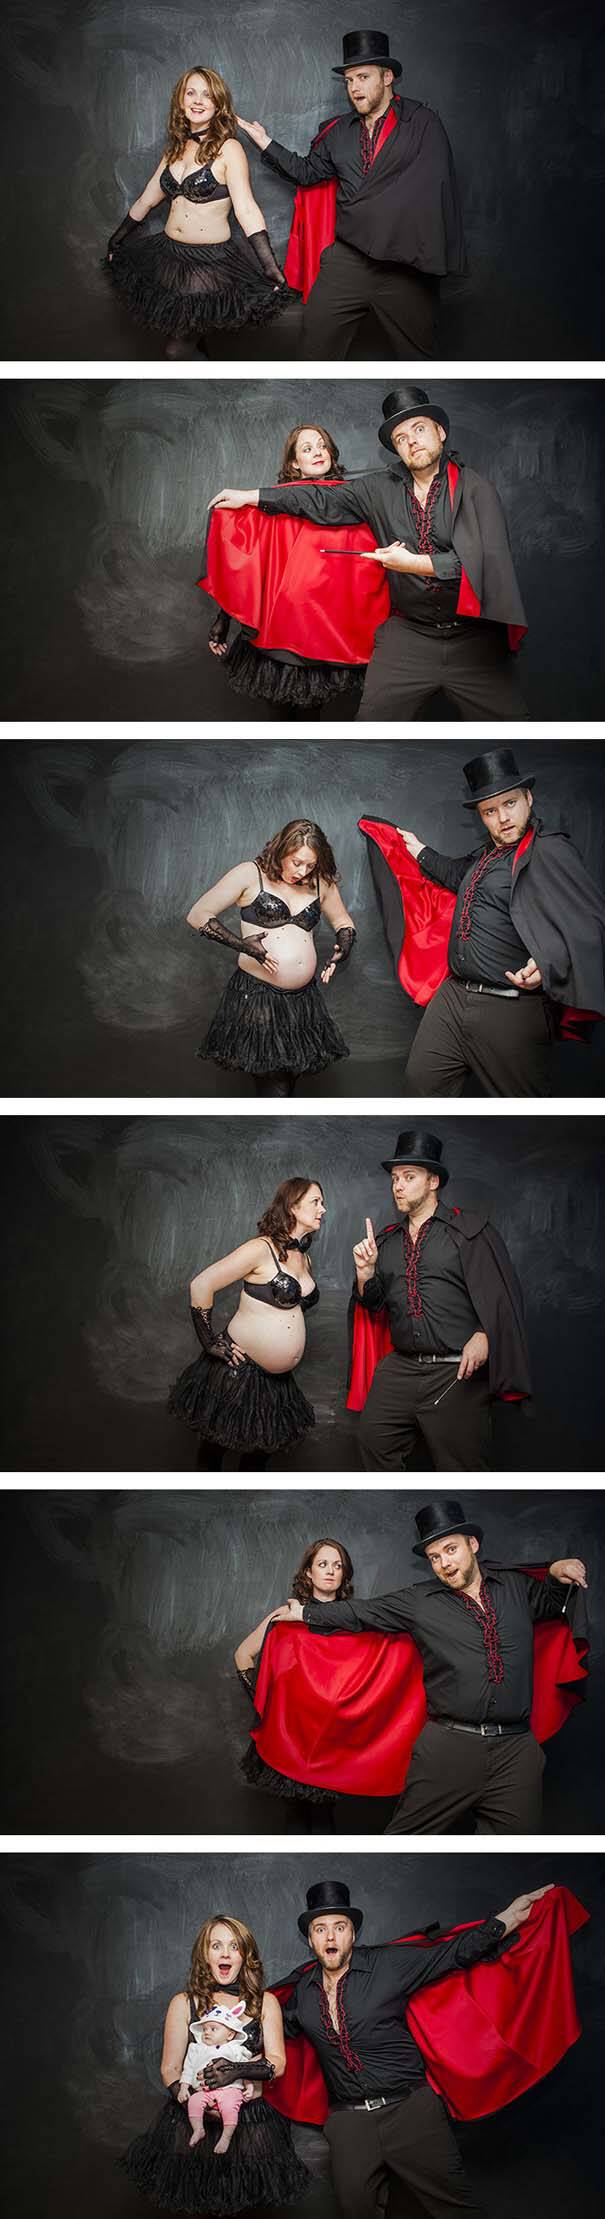 Φωτογραφίες πριν και μετά την εγκυμοσύνη (3)